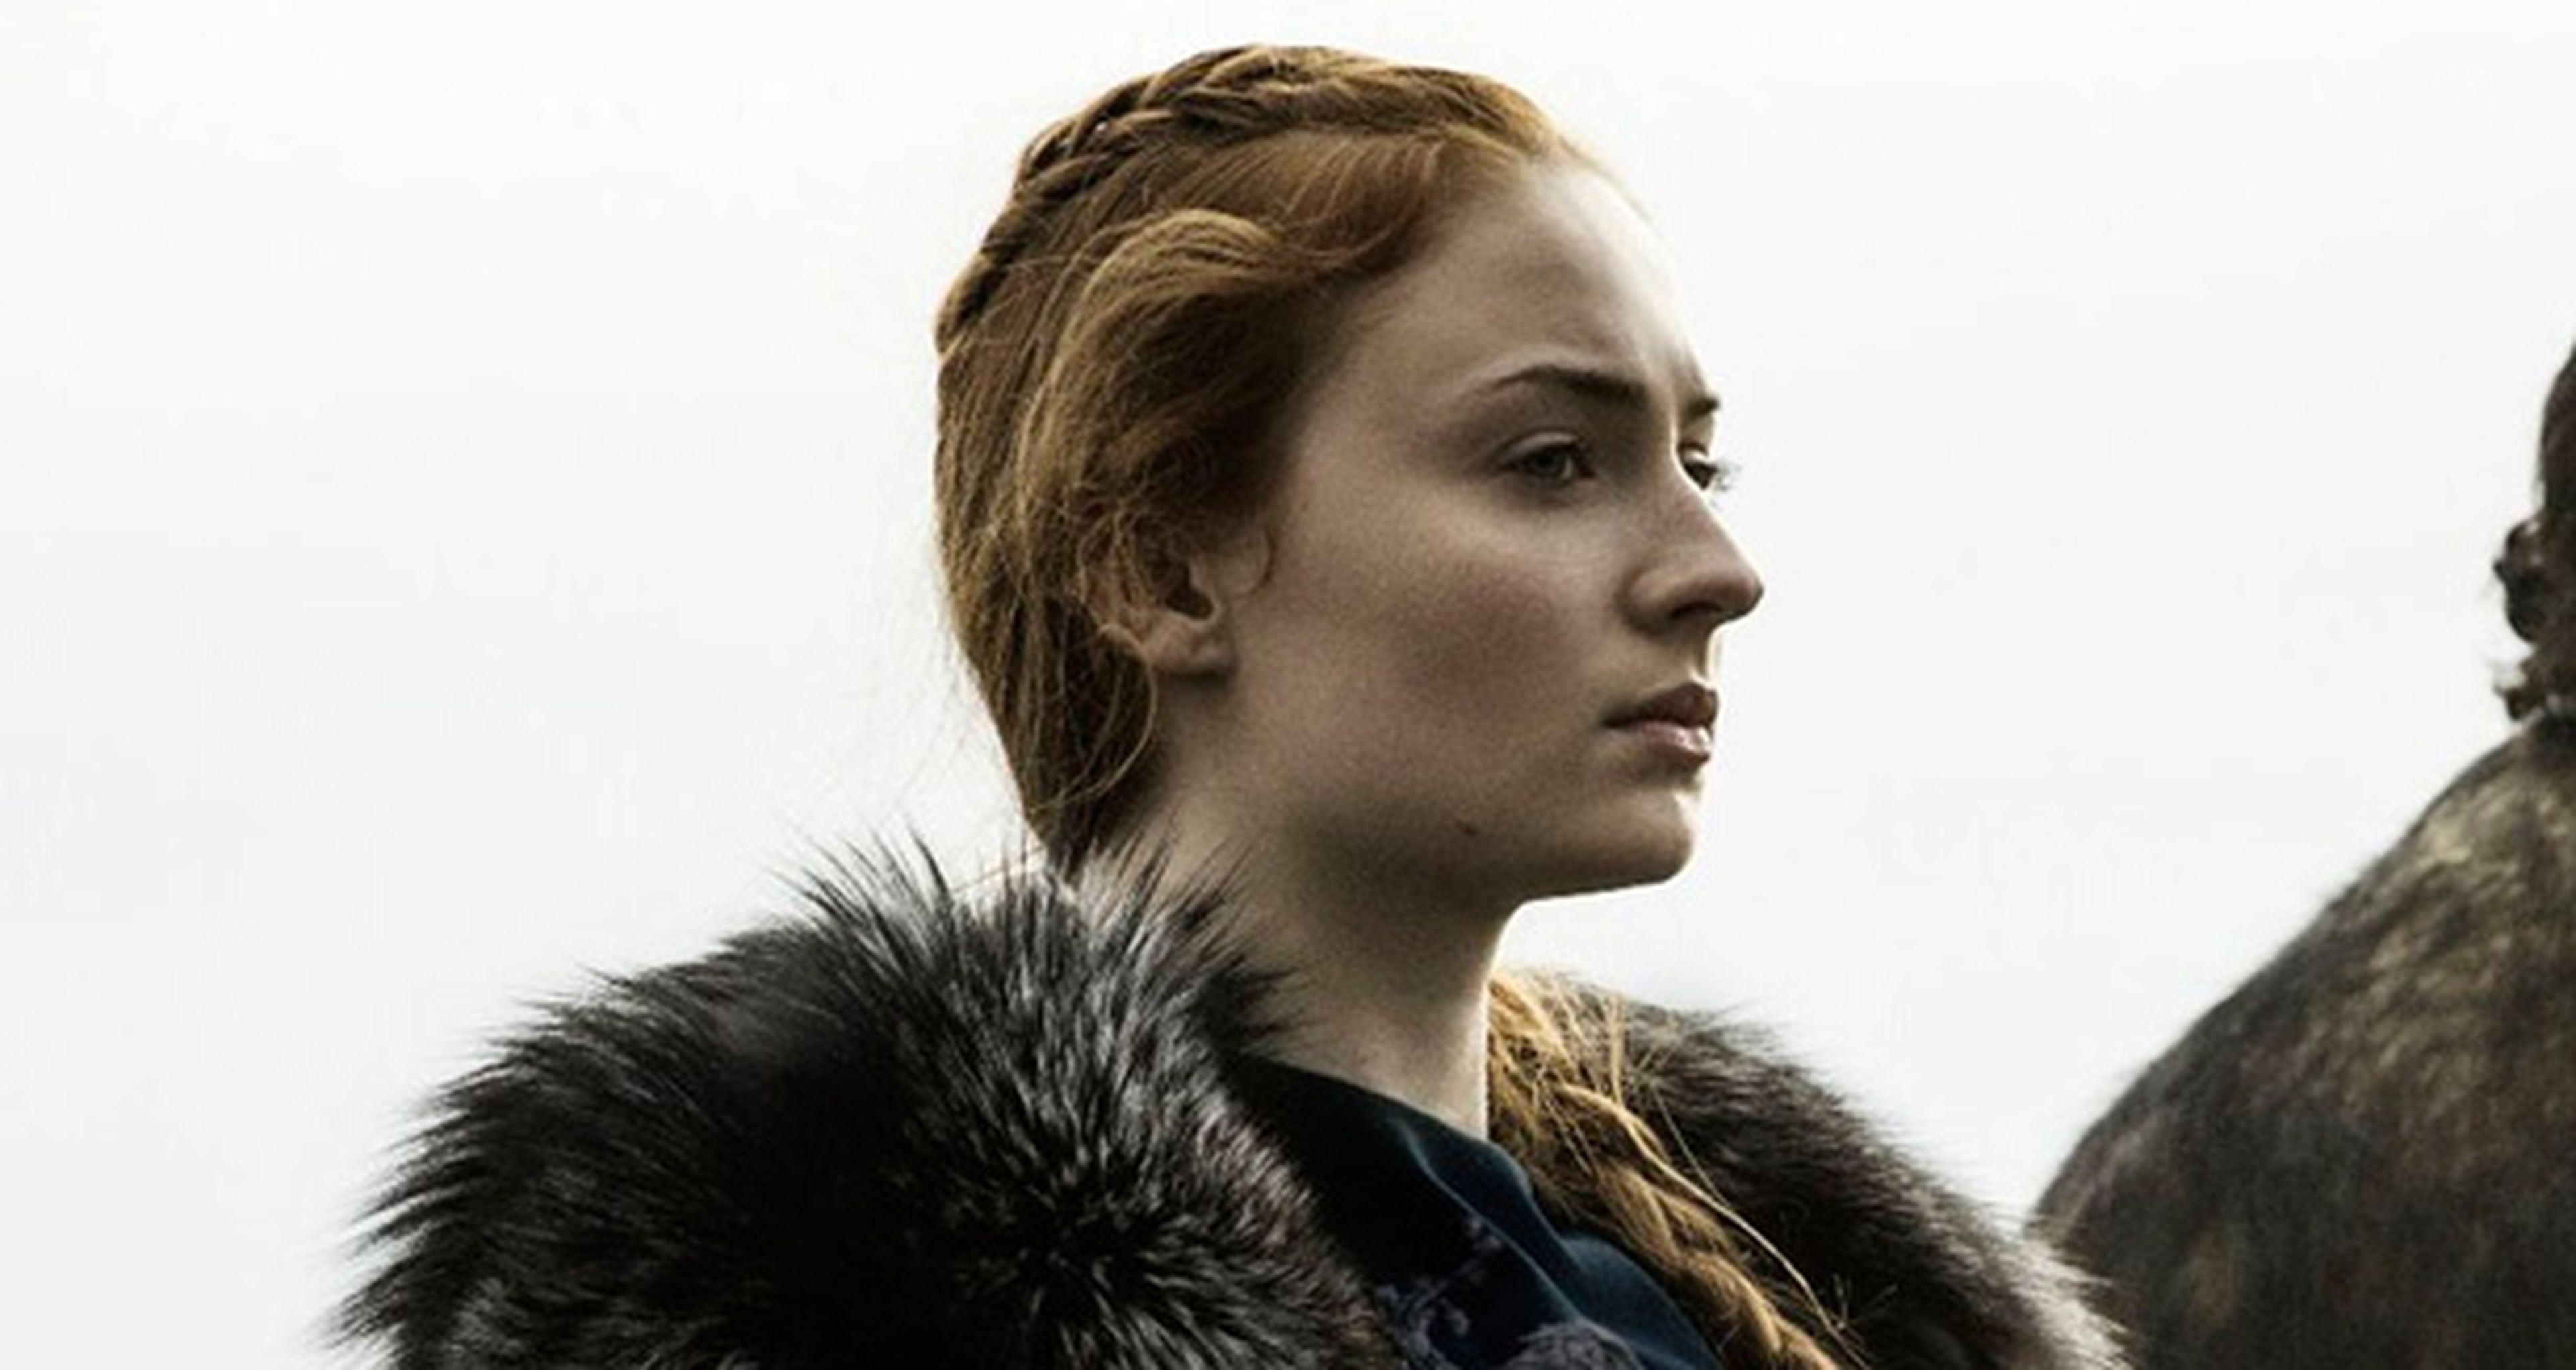 Juego de Tronos - Sansa Stark estará en Madrid gracias a Movistar+